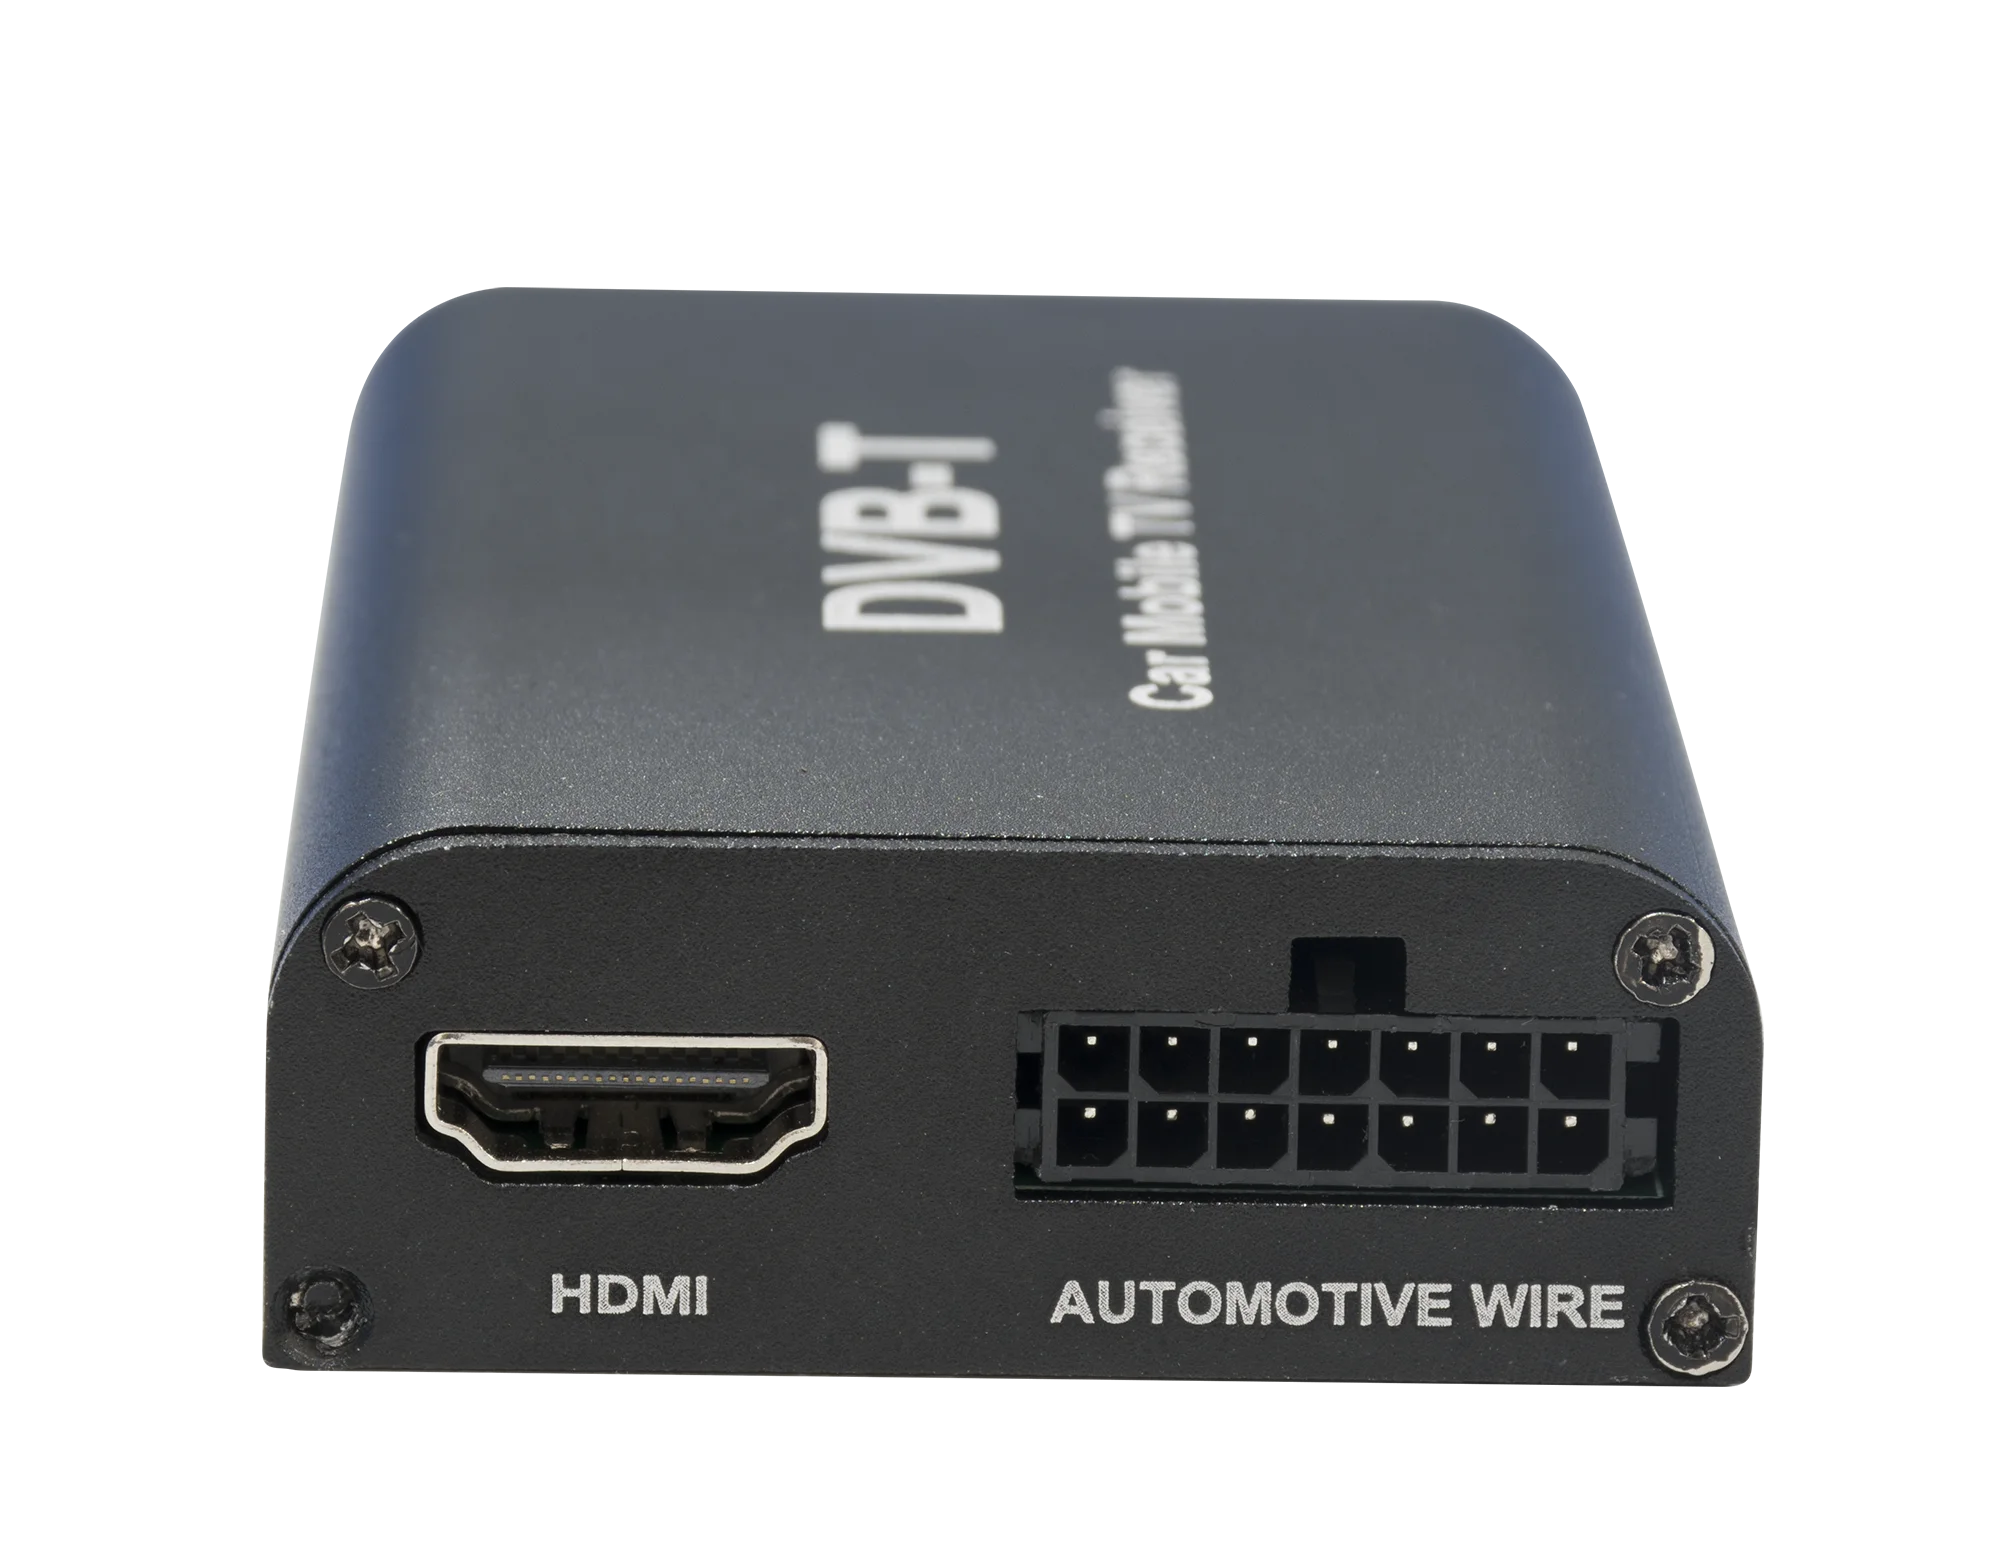 dvb-t2 de coche/dvb-t mpeg4 digital tv box 2 antena soporte 180-200 km/h  velocidad conducción digital coche tv sintonizador hd 1080p tv receptor